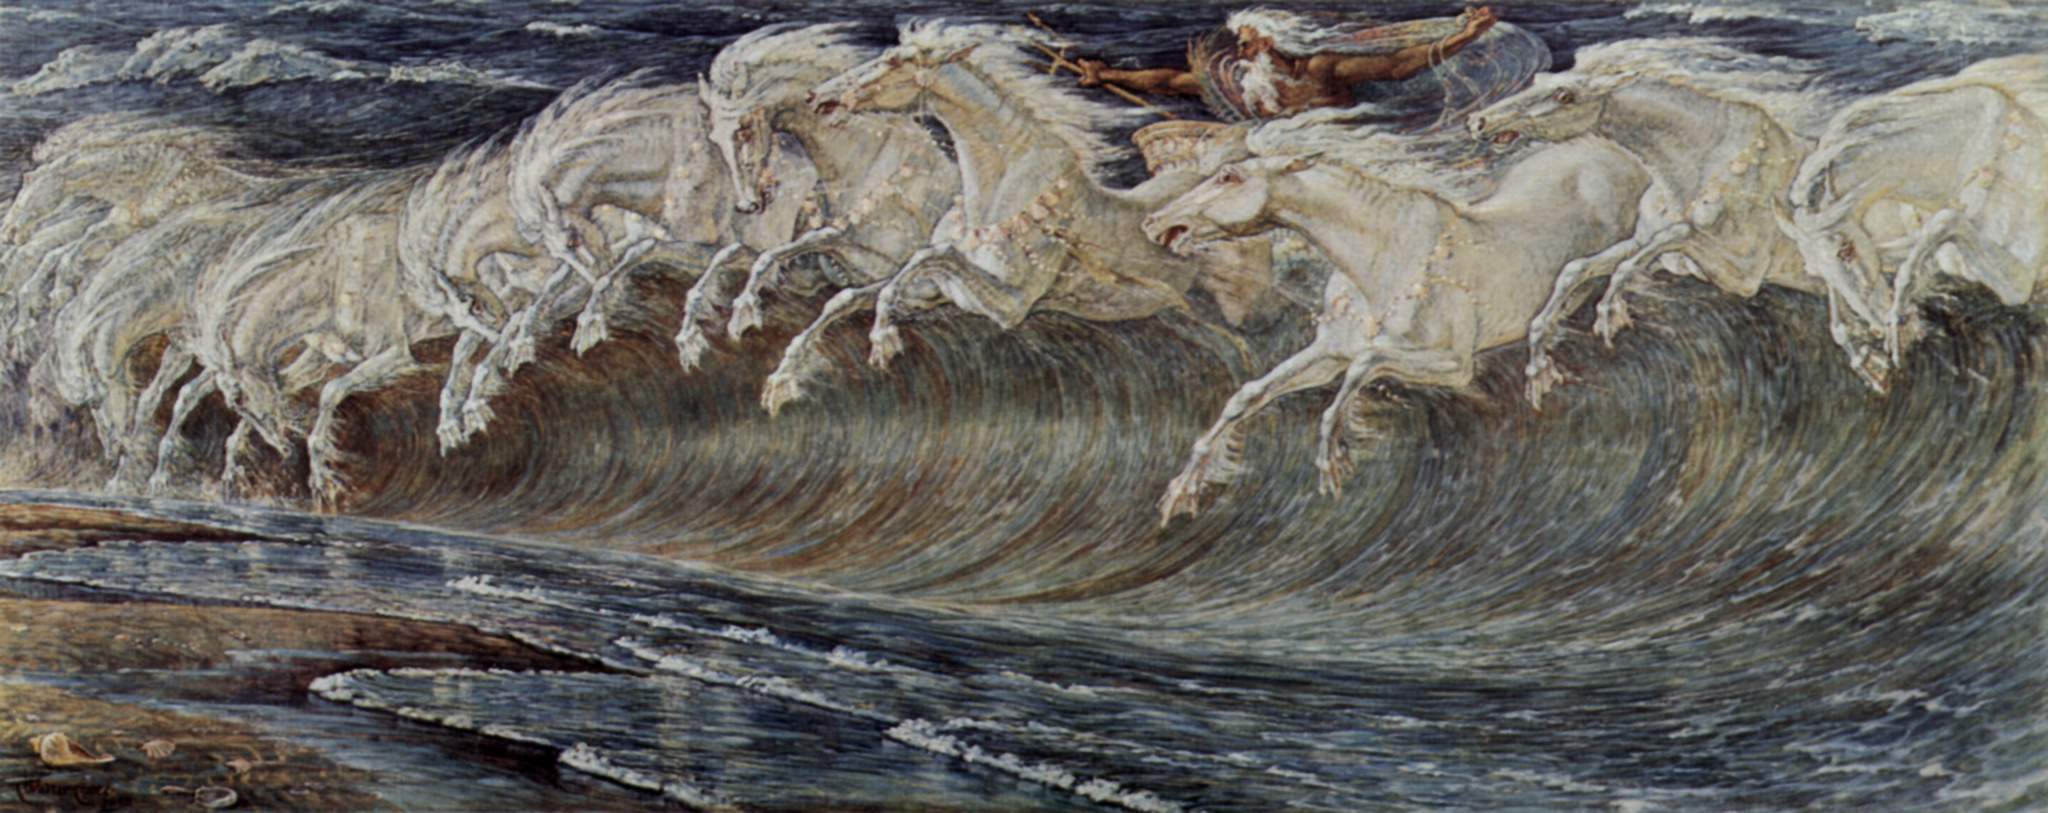 Imagen de la orilla del mar con olas y caballos corriendo.